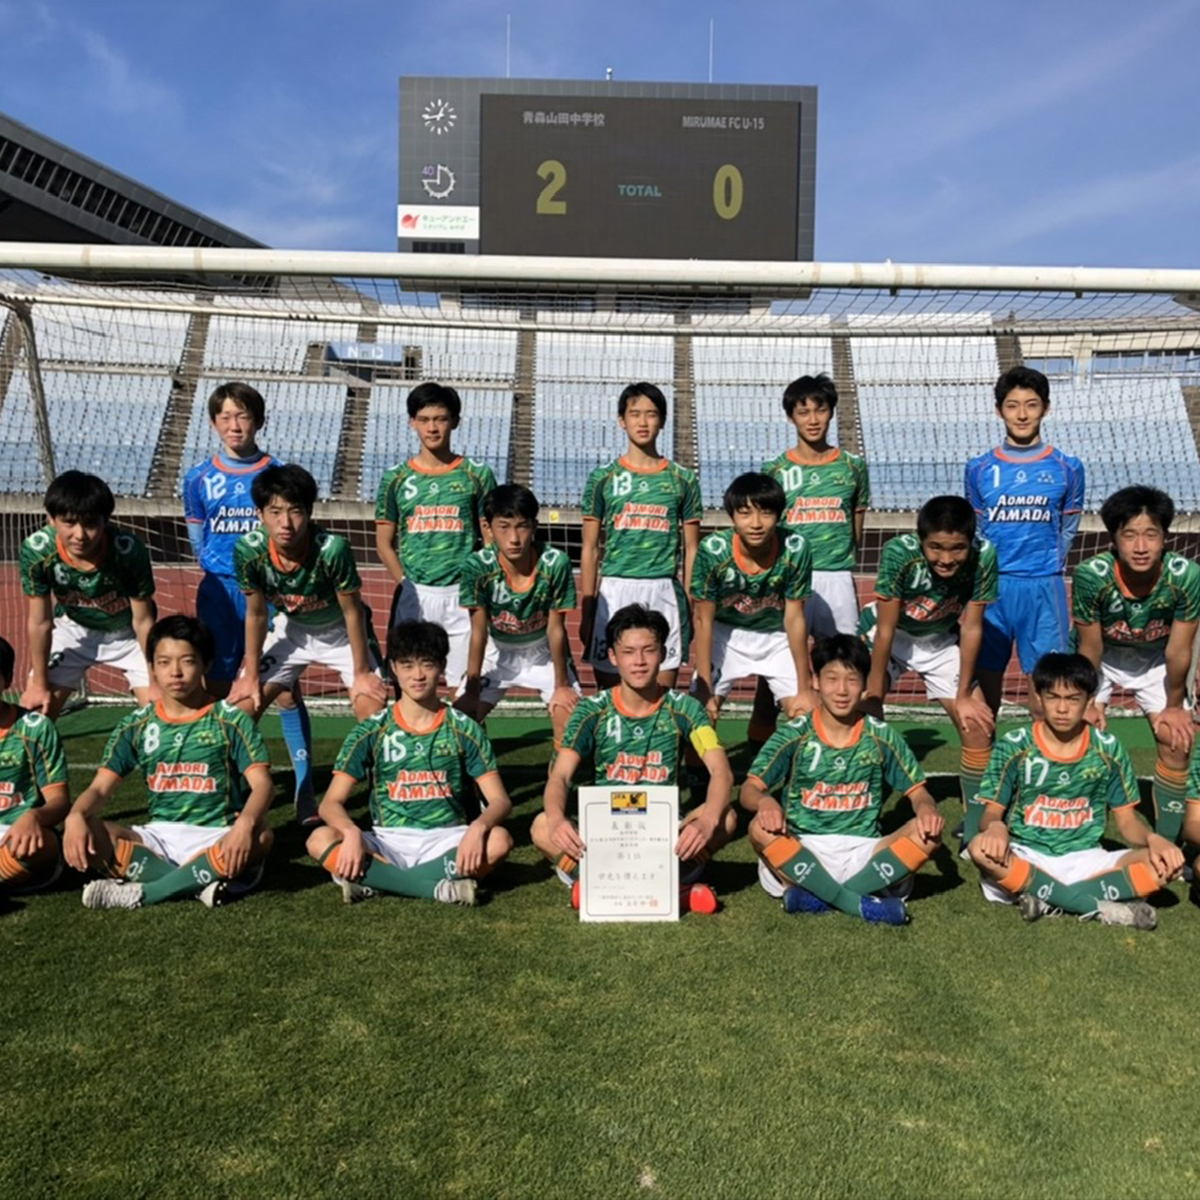 青森山田中学校サッカー部 こちらも見逃せない全国大会がスタート バランスタイムズ サッカーのあるファッションライフ